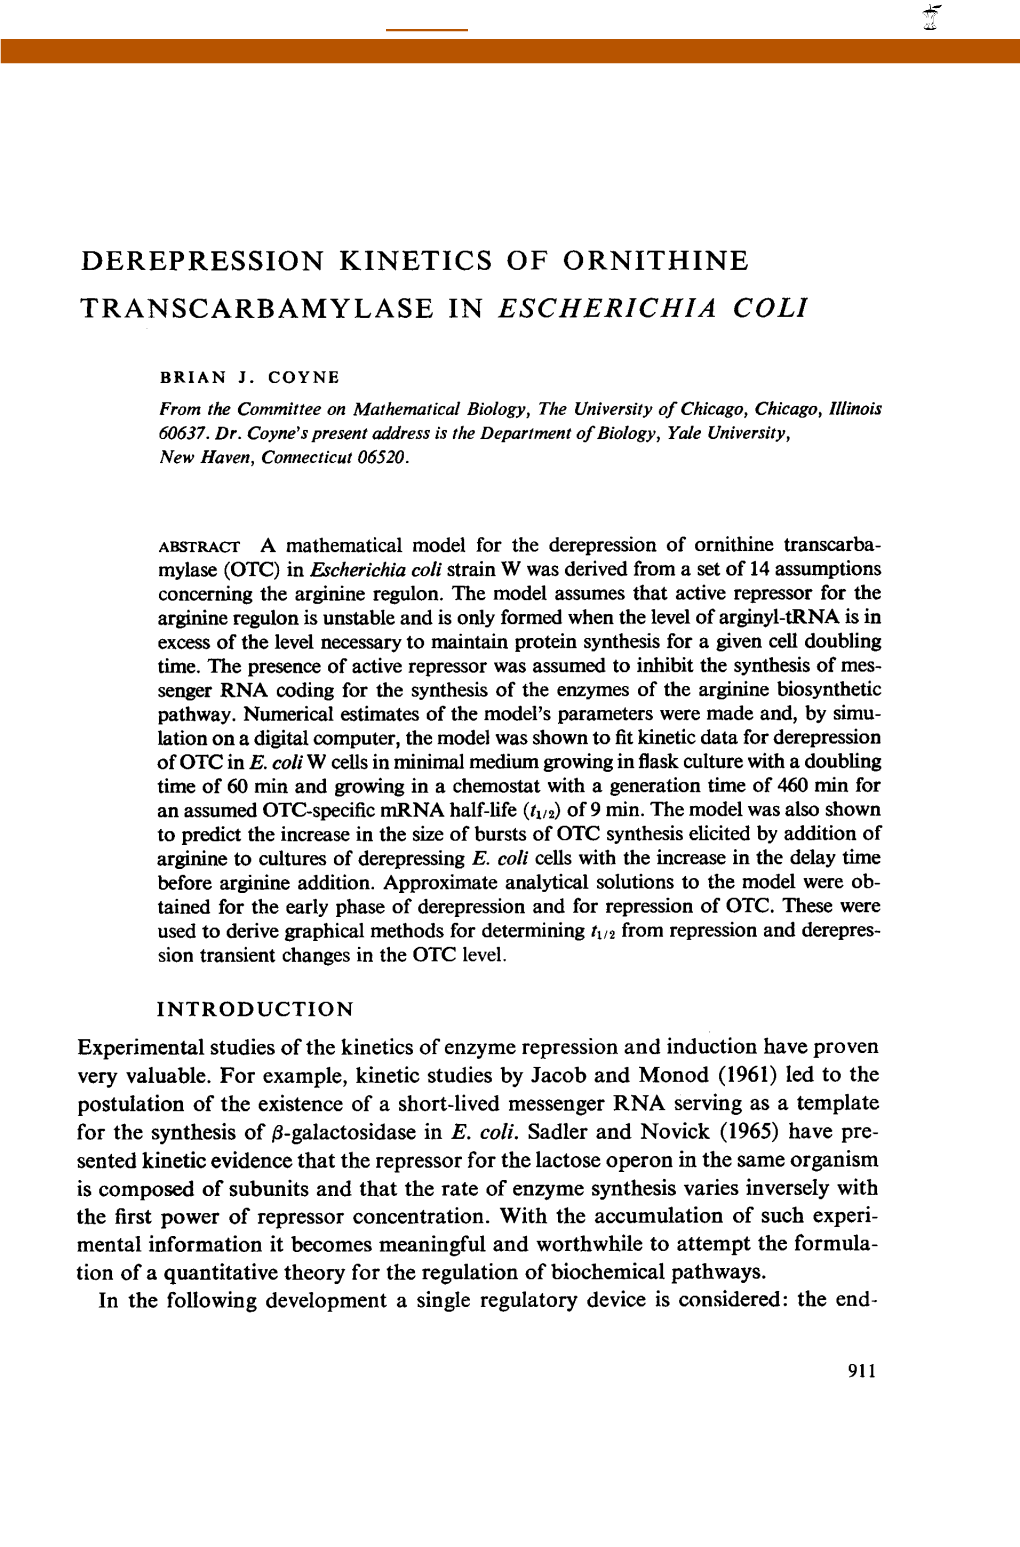 Derepression Kinetics of Ornithine Transcarbamylase in Escherichia Coli